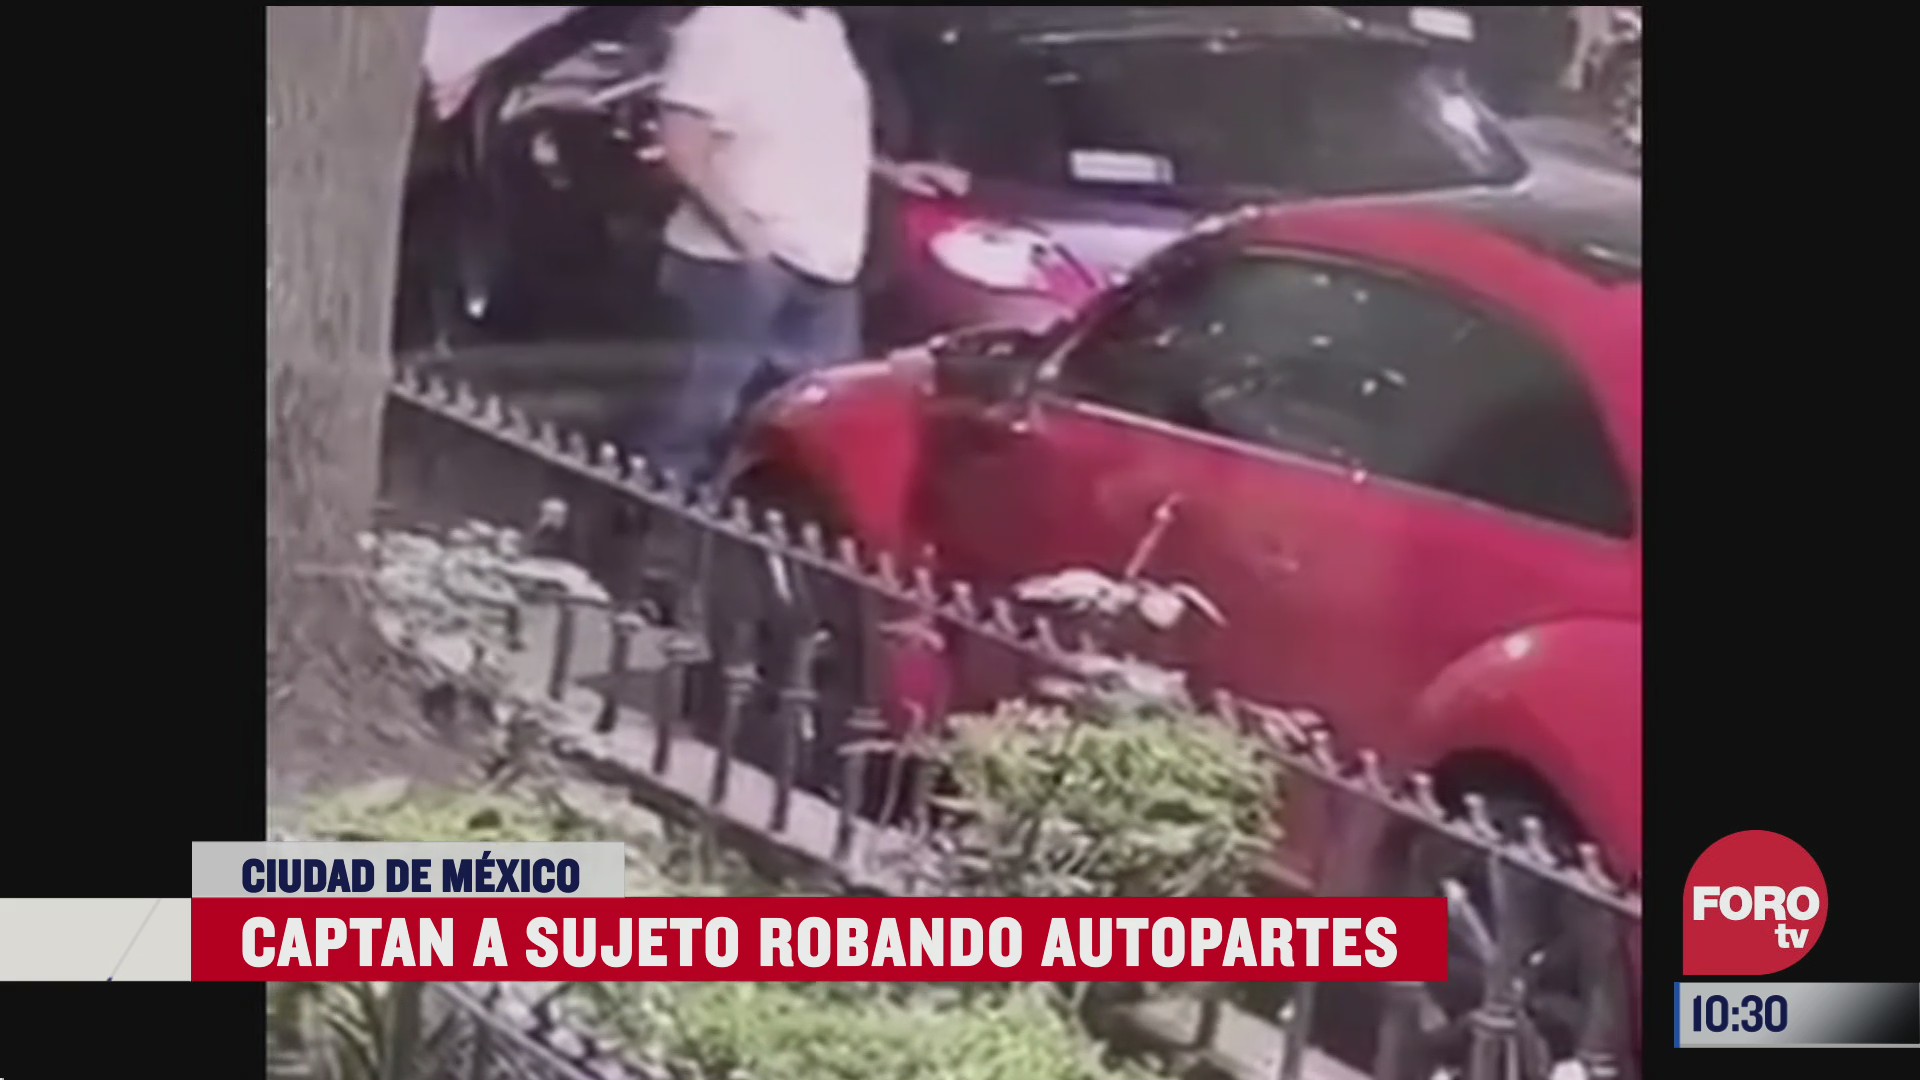 graban video donde un sujeto roba autopartes en la ciudad de mexico